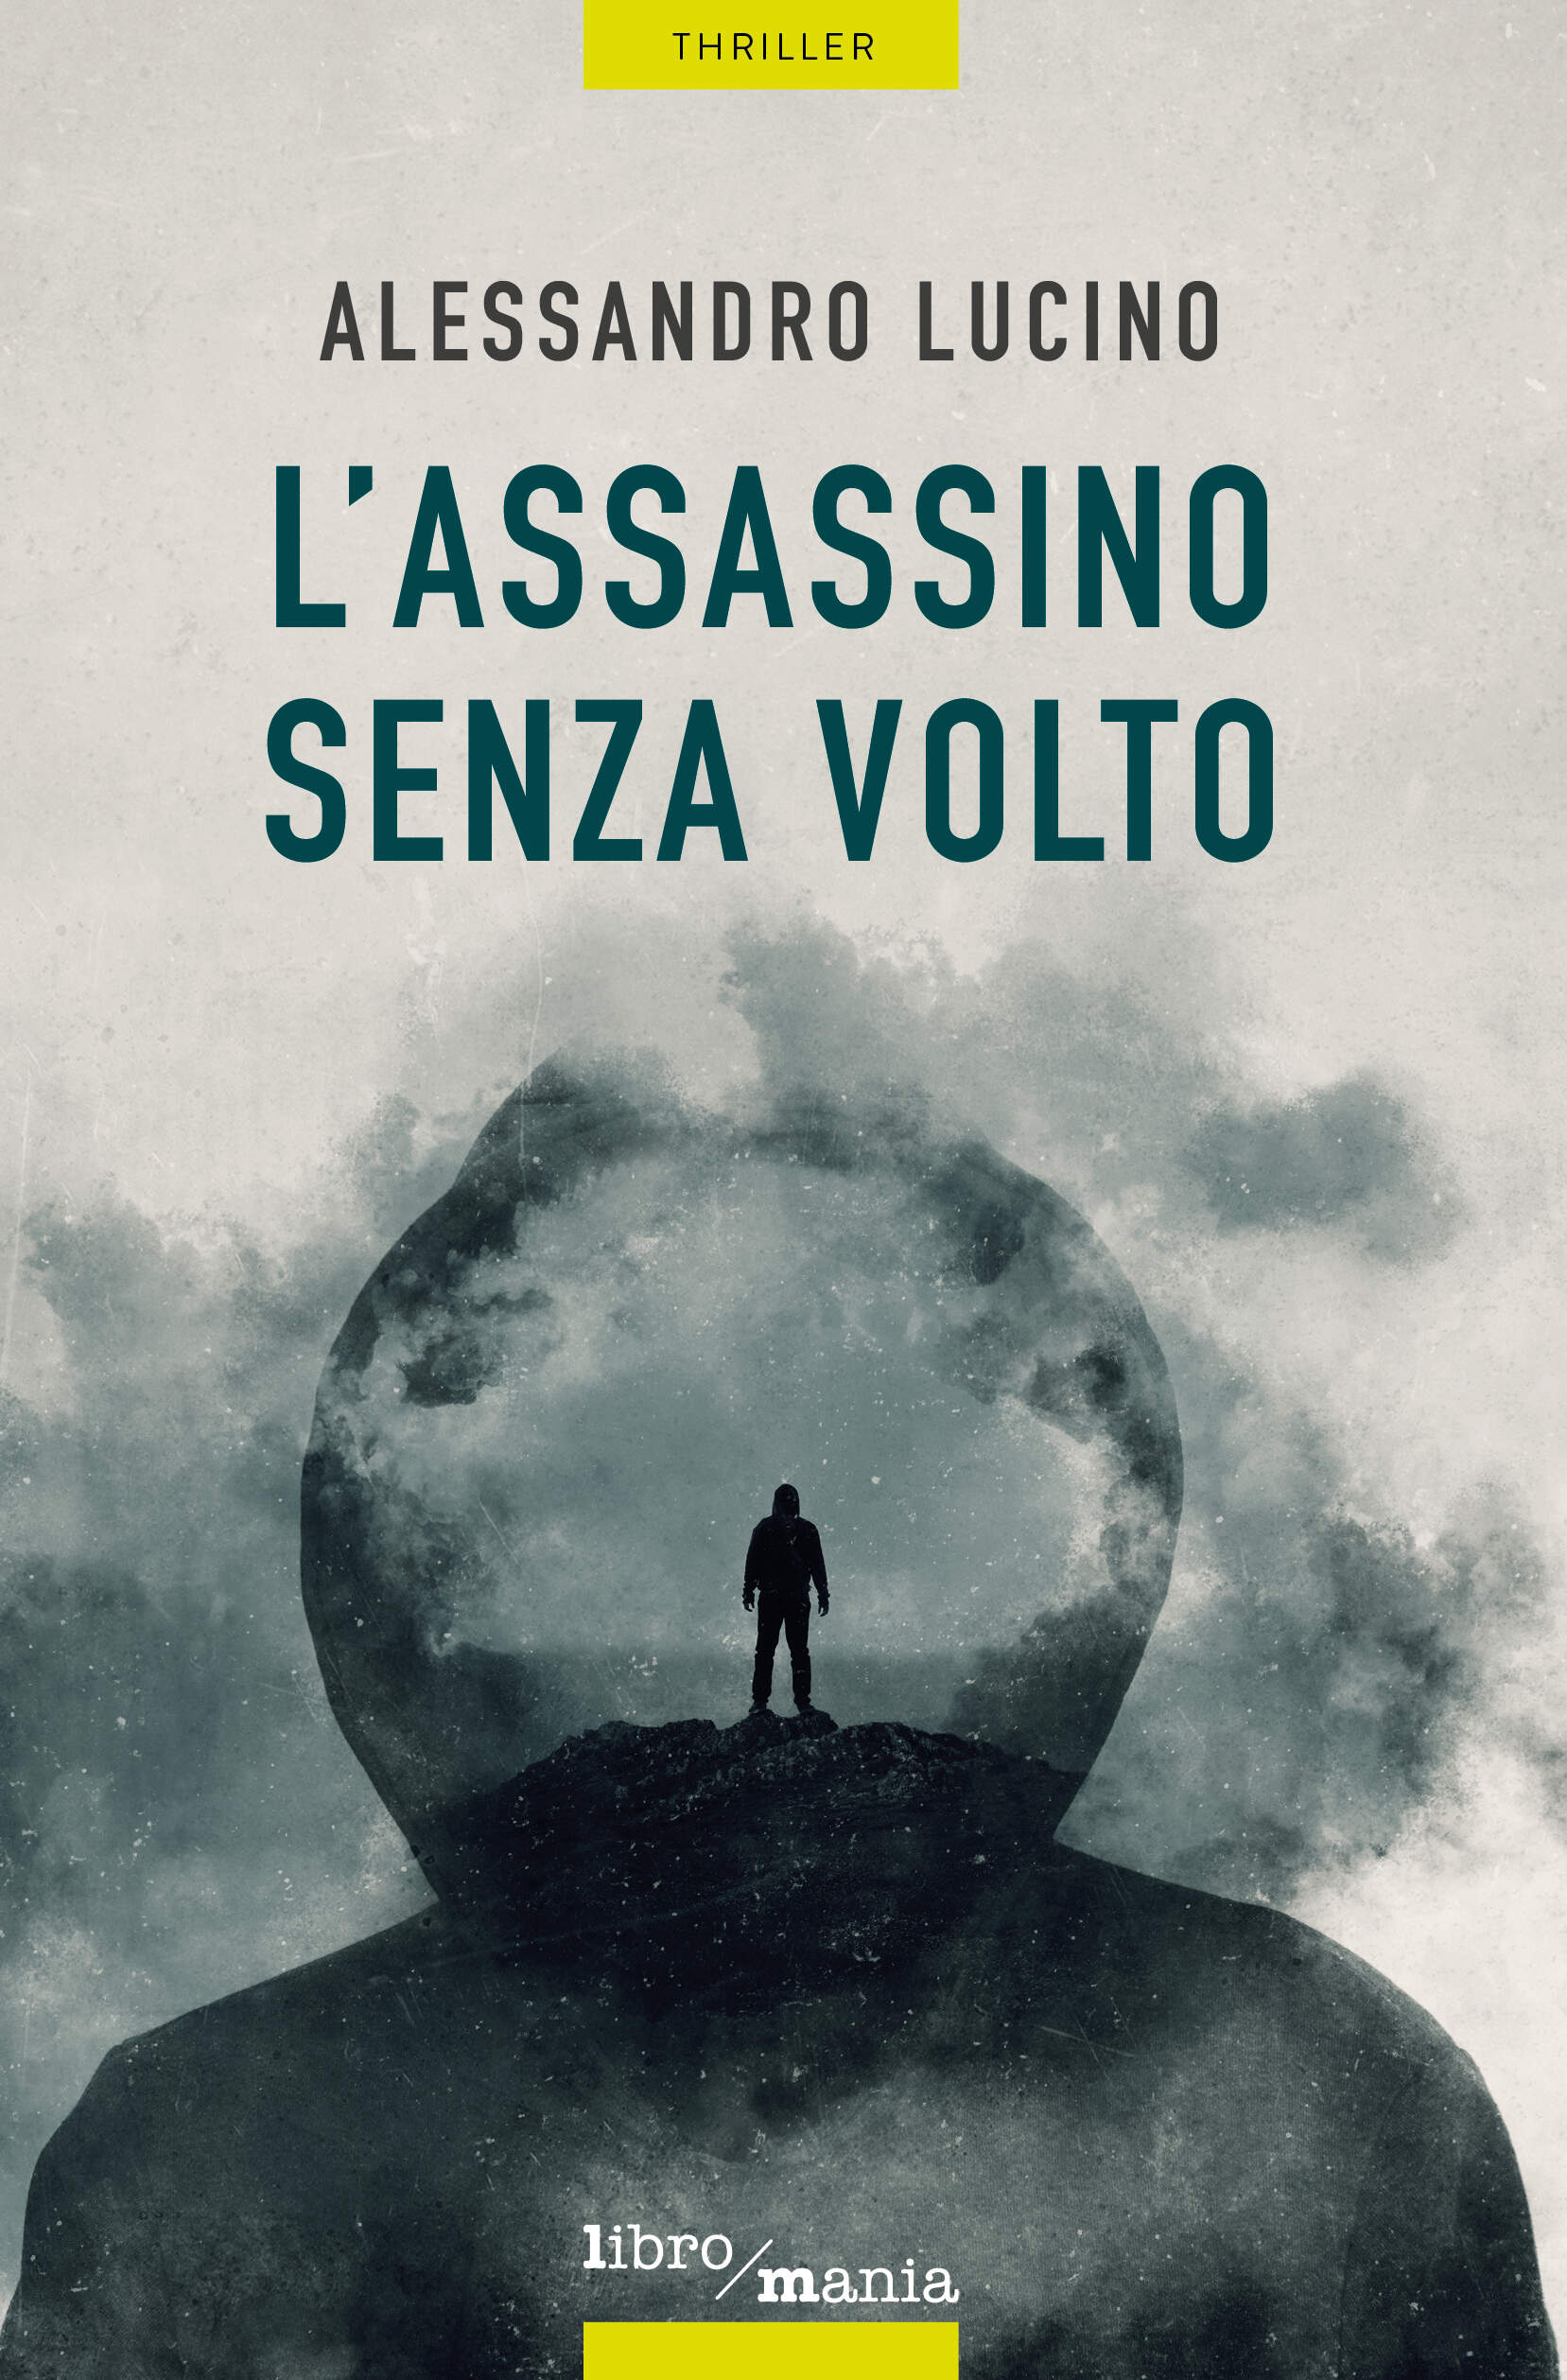 Alessandro Lucino, L'assassino senza volto, Libromania